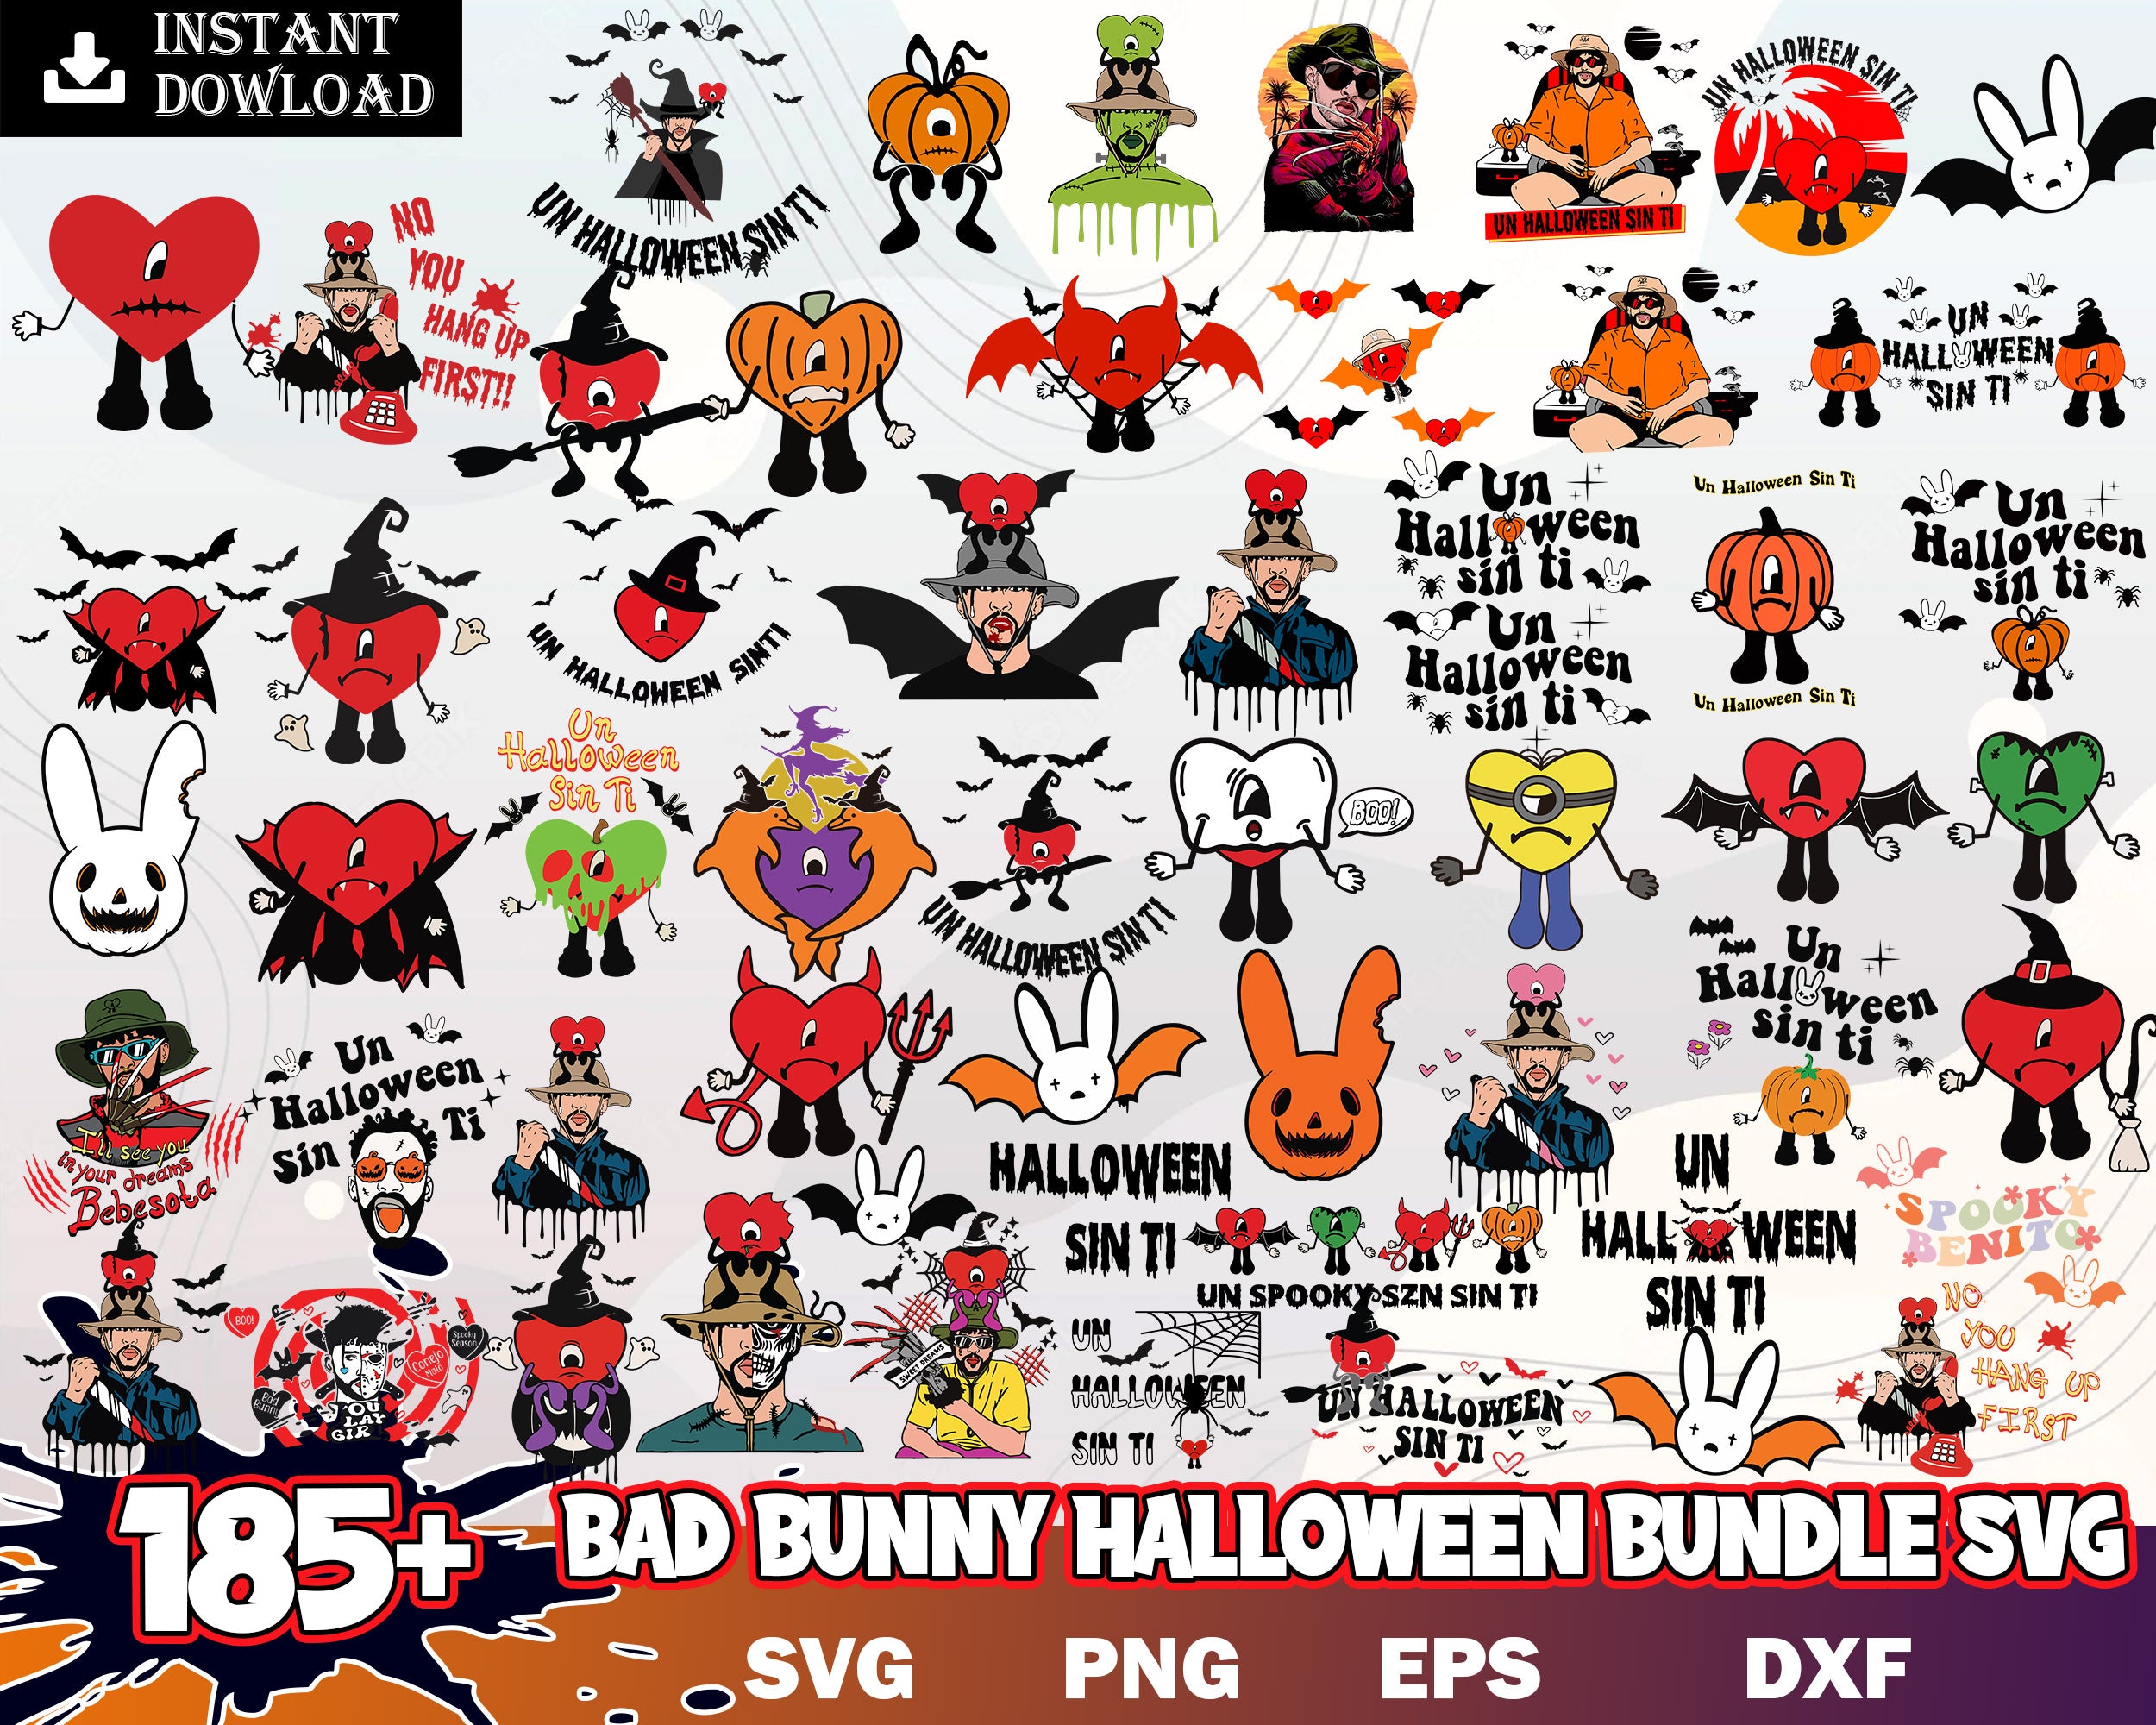 185+ Bad Bunny Halloween, Bad Bunny Horror SVG, Bad Bunny Png, Freddy Kruger Png, Digital horror download.